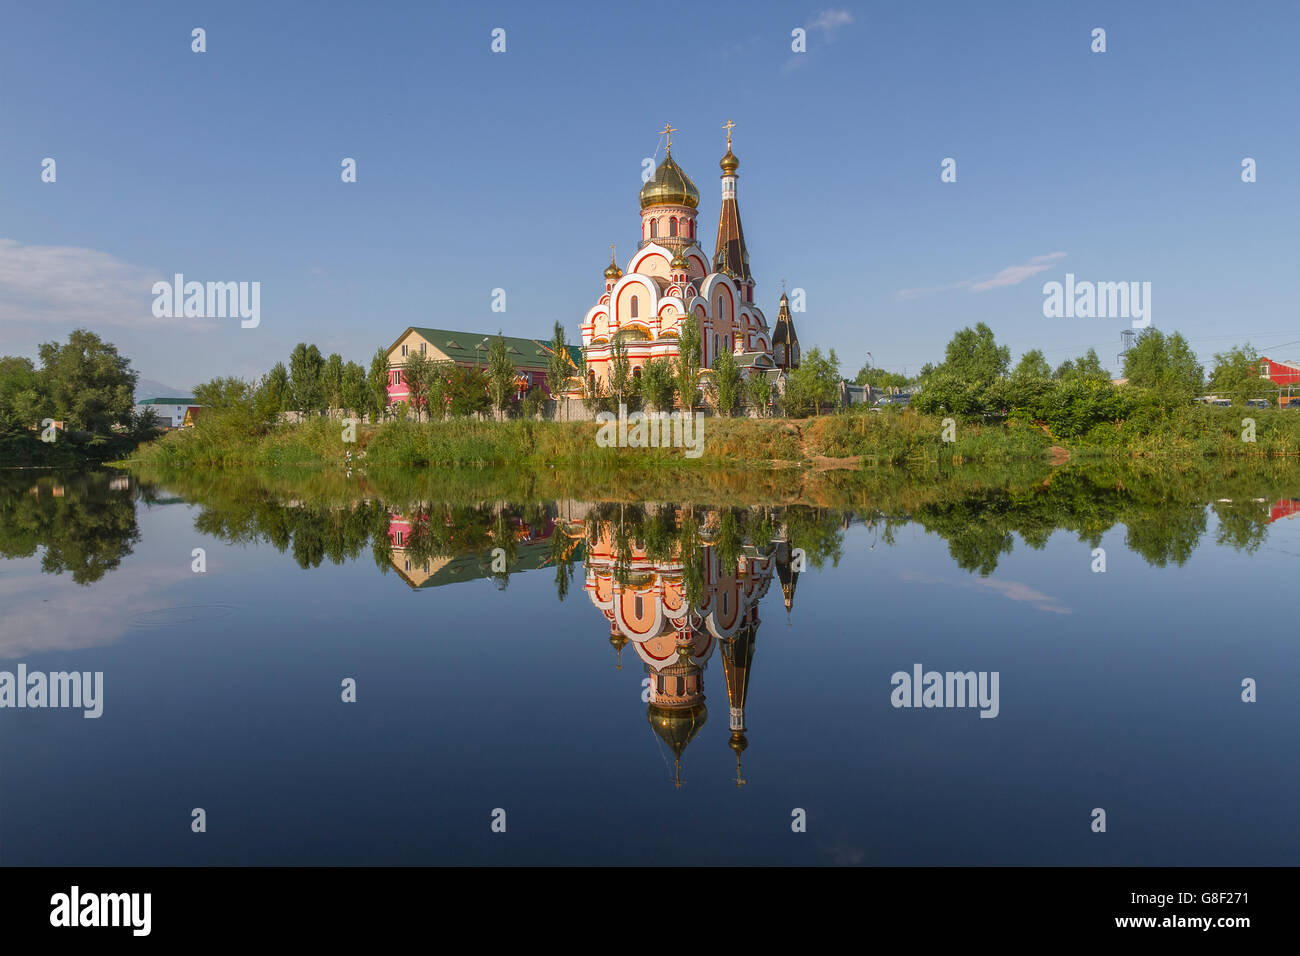 Russisch-orthodoxe Kirche in Almaty, Kasachstan, auch bekannt als Kirche der Erhöhung des Heiligen Kreuzes und dessen Spiegelbild im Wasser. Stockfoto